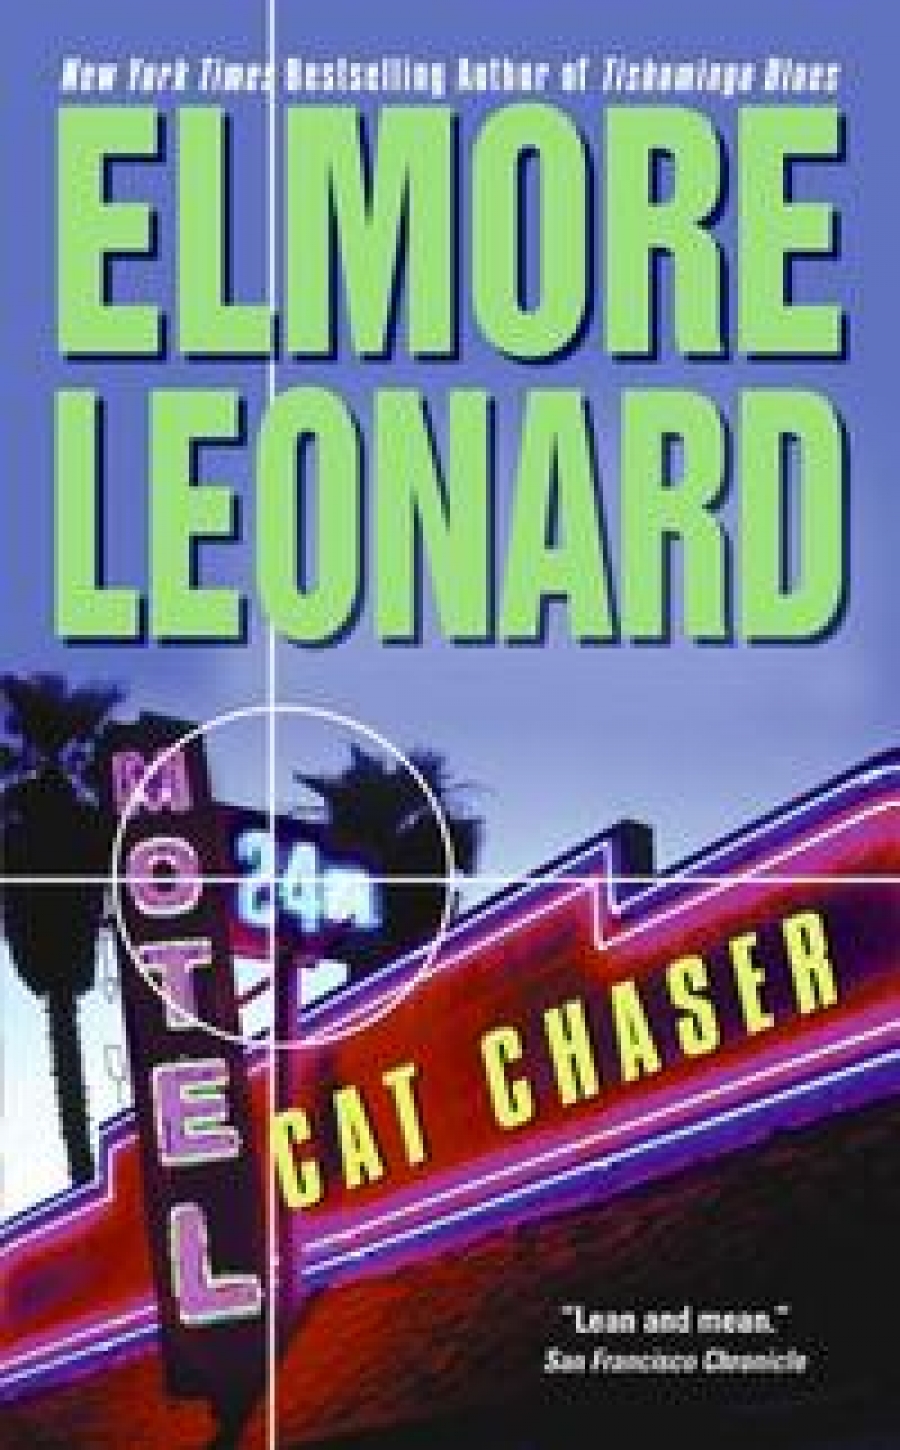 Leonard, Elmore Cat Chaser 